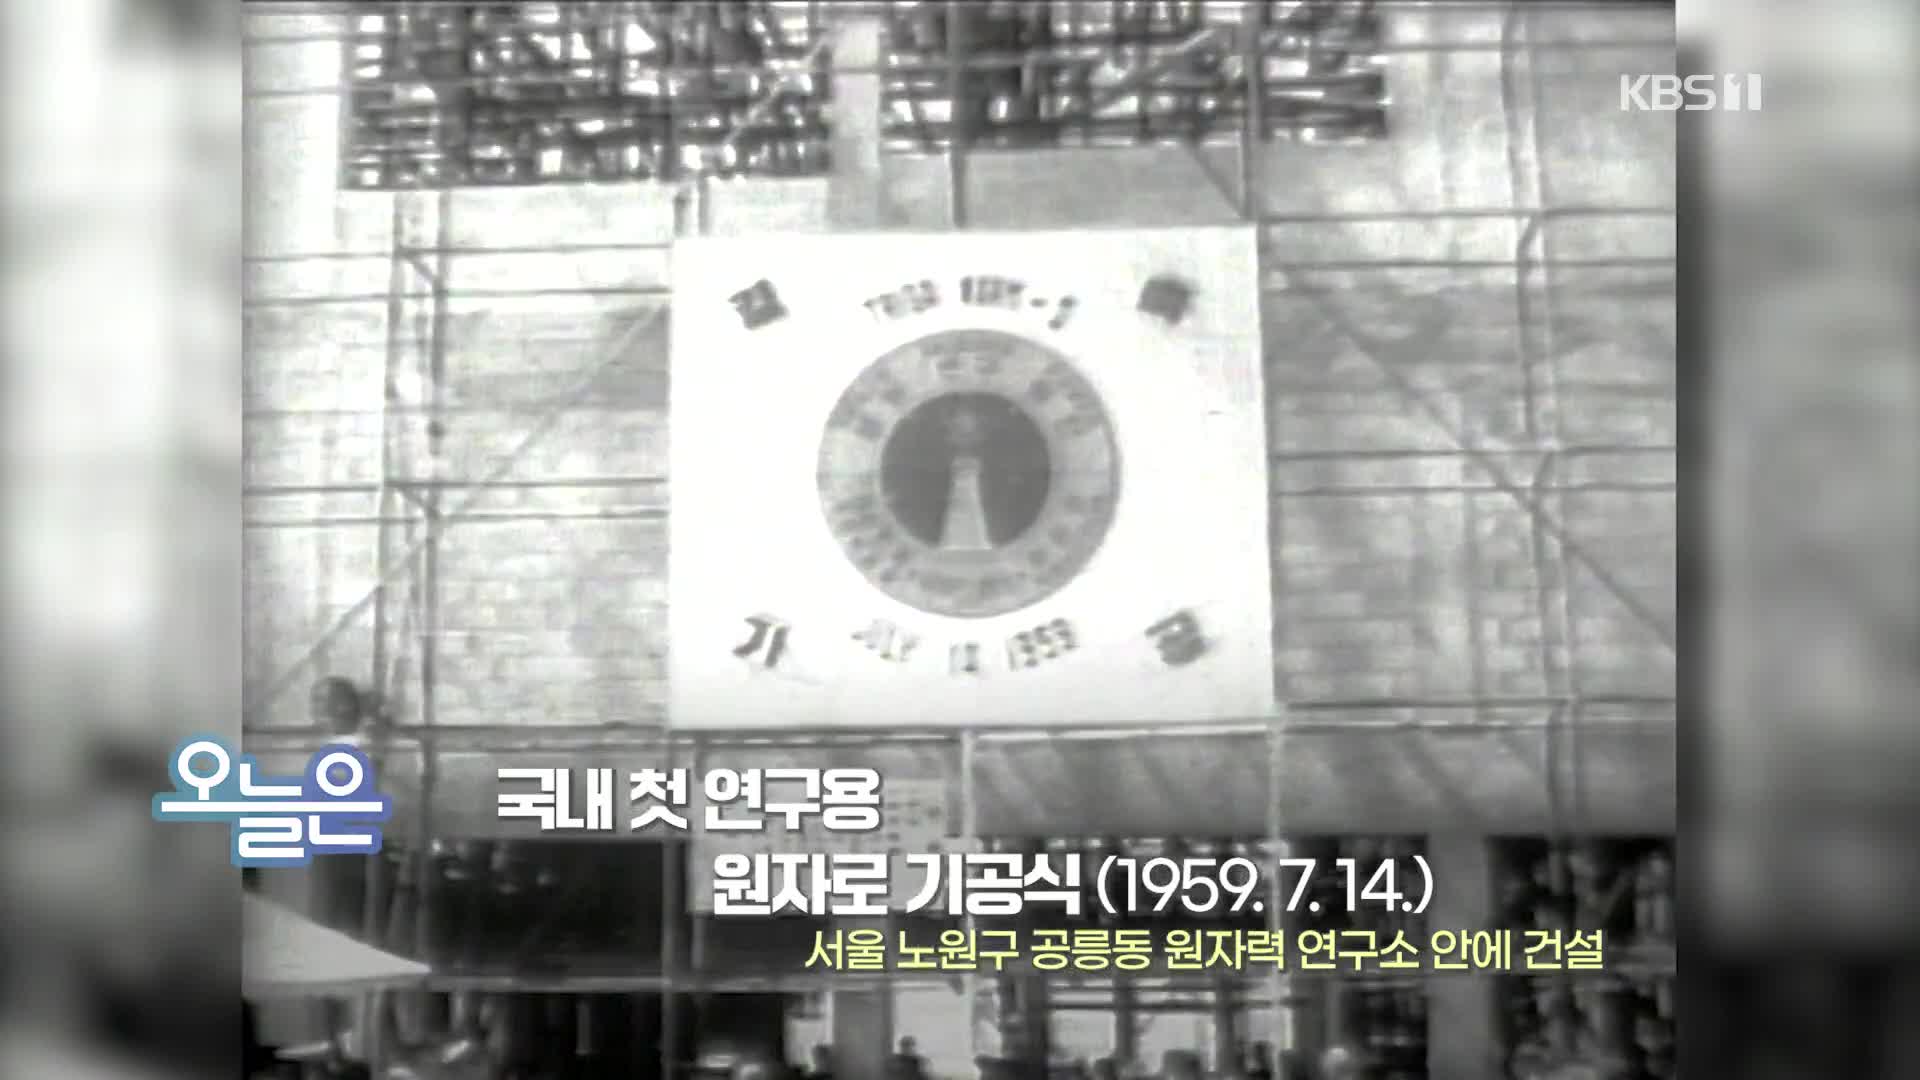 [오늘은] 국내 첫 연구용 원자로 기공식 (1959.7.14.)